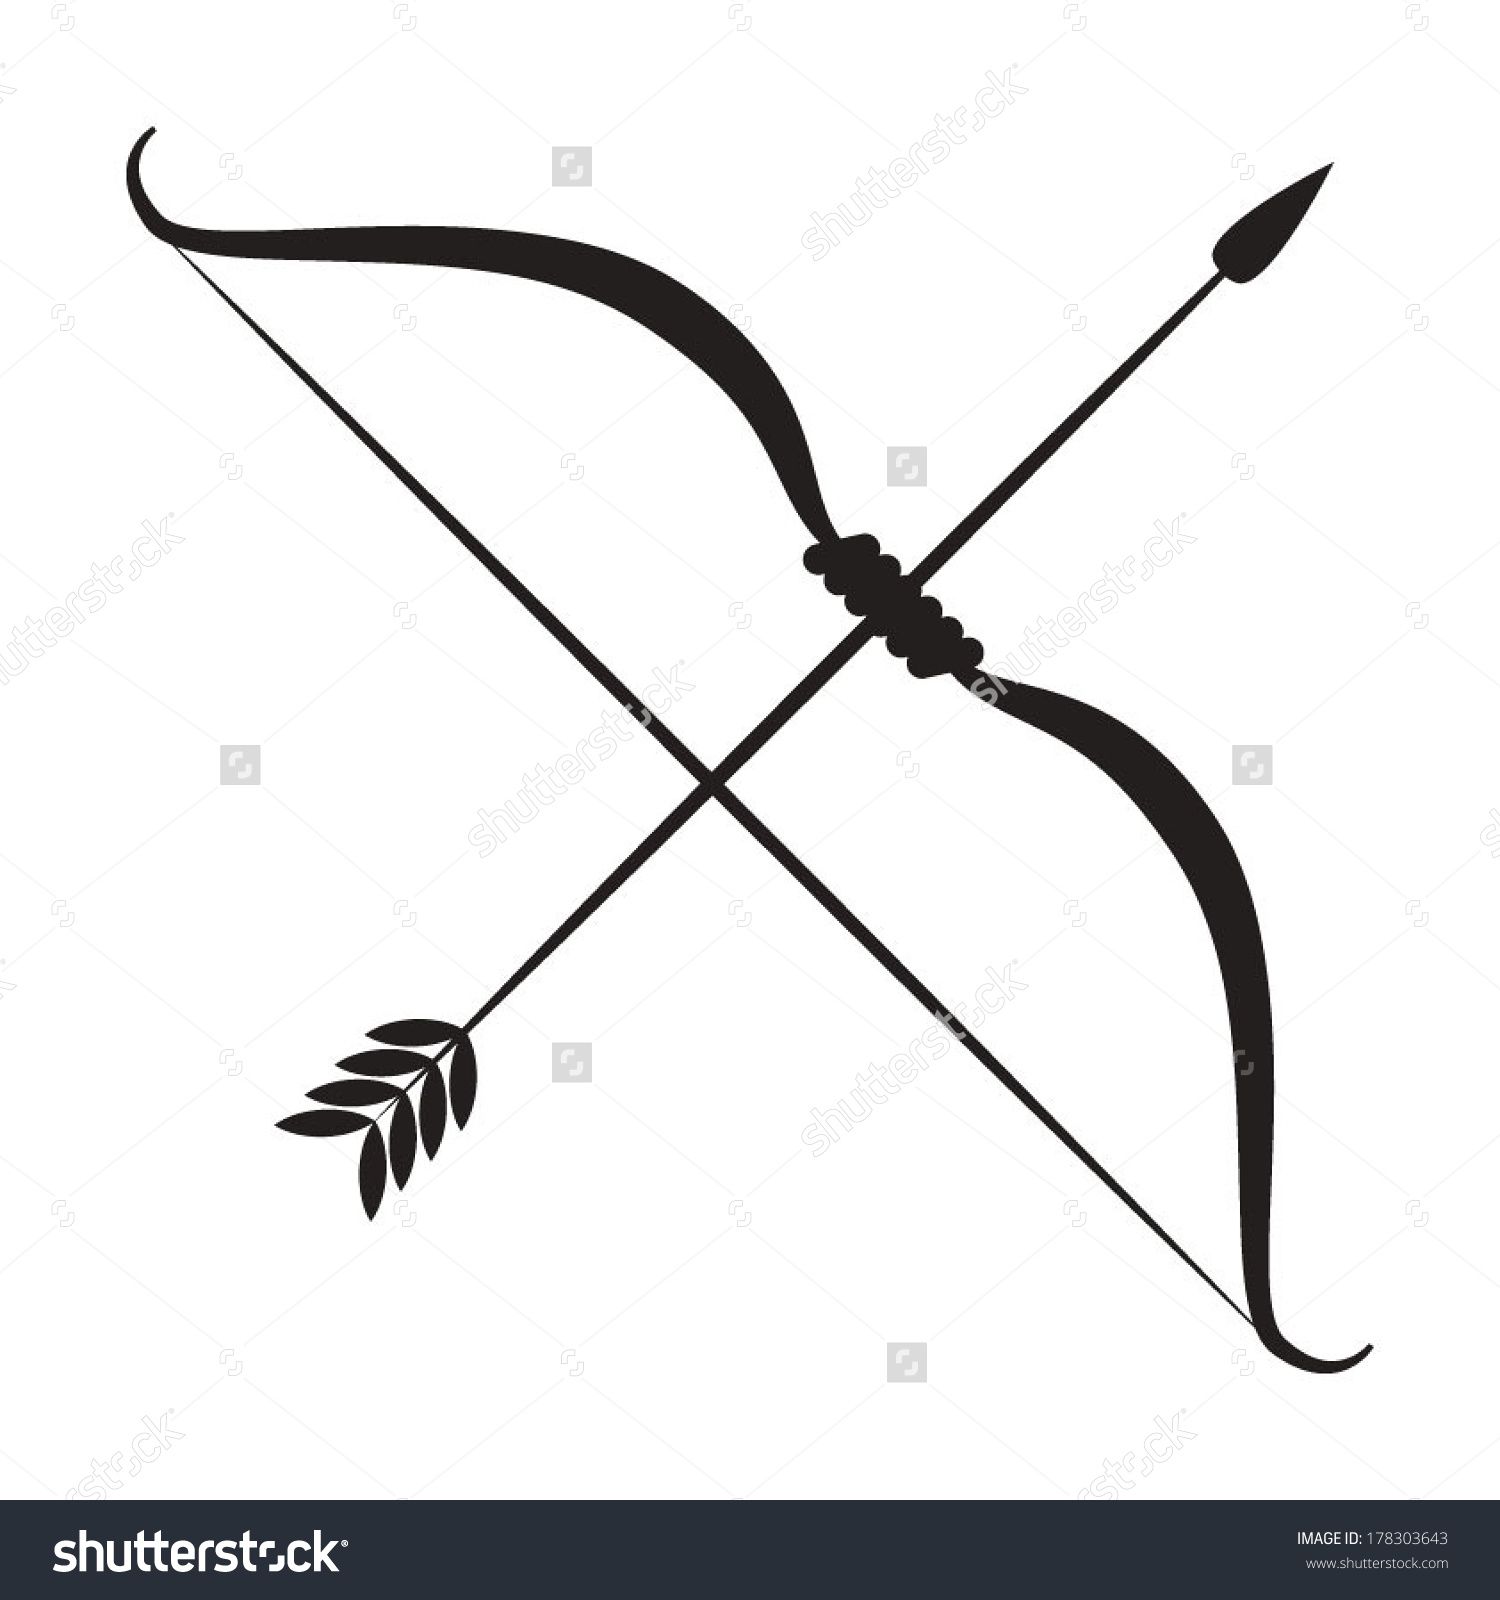 Archery Arrow Vector At Collection Of Archery Arrow